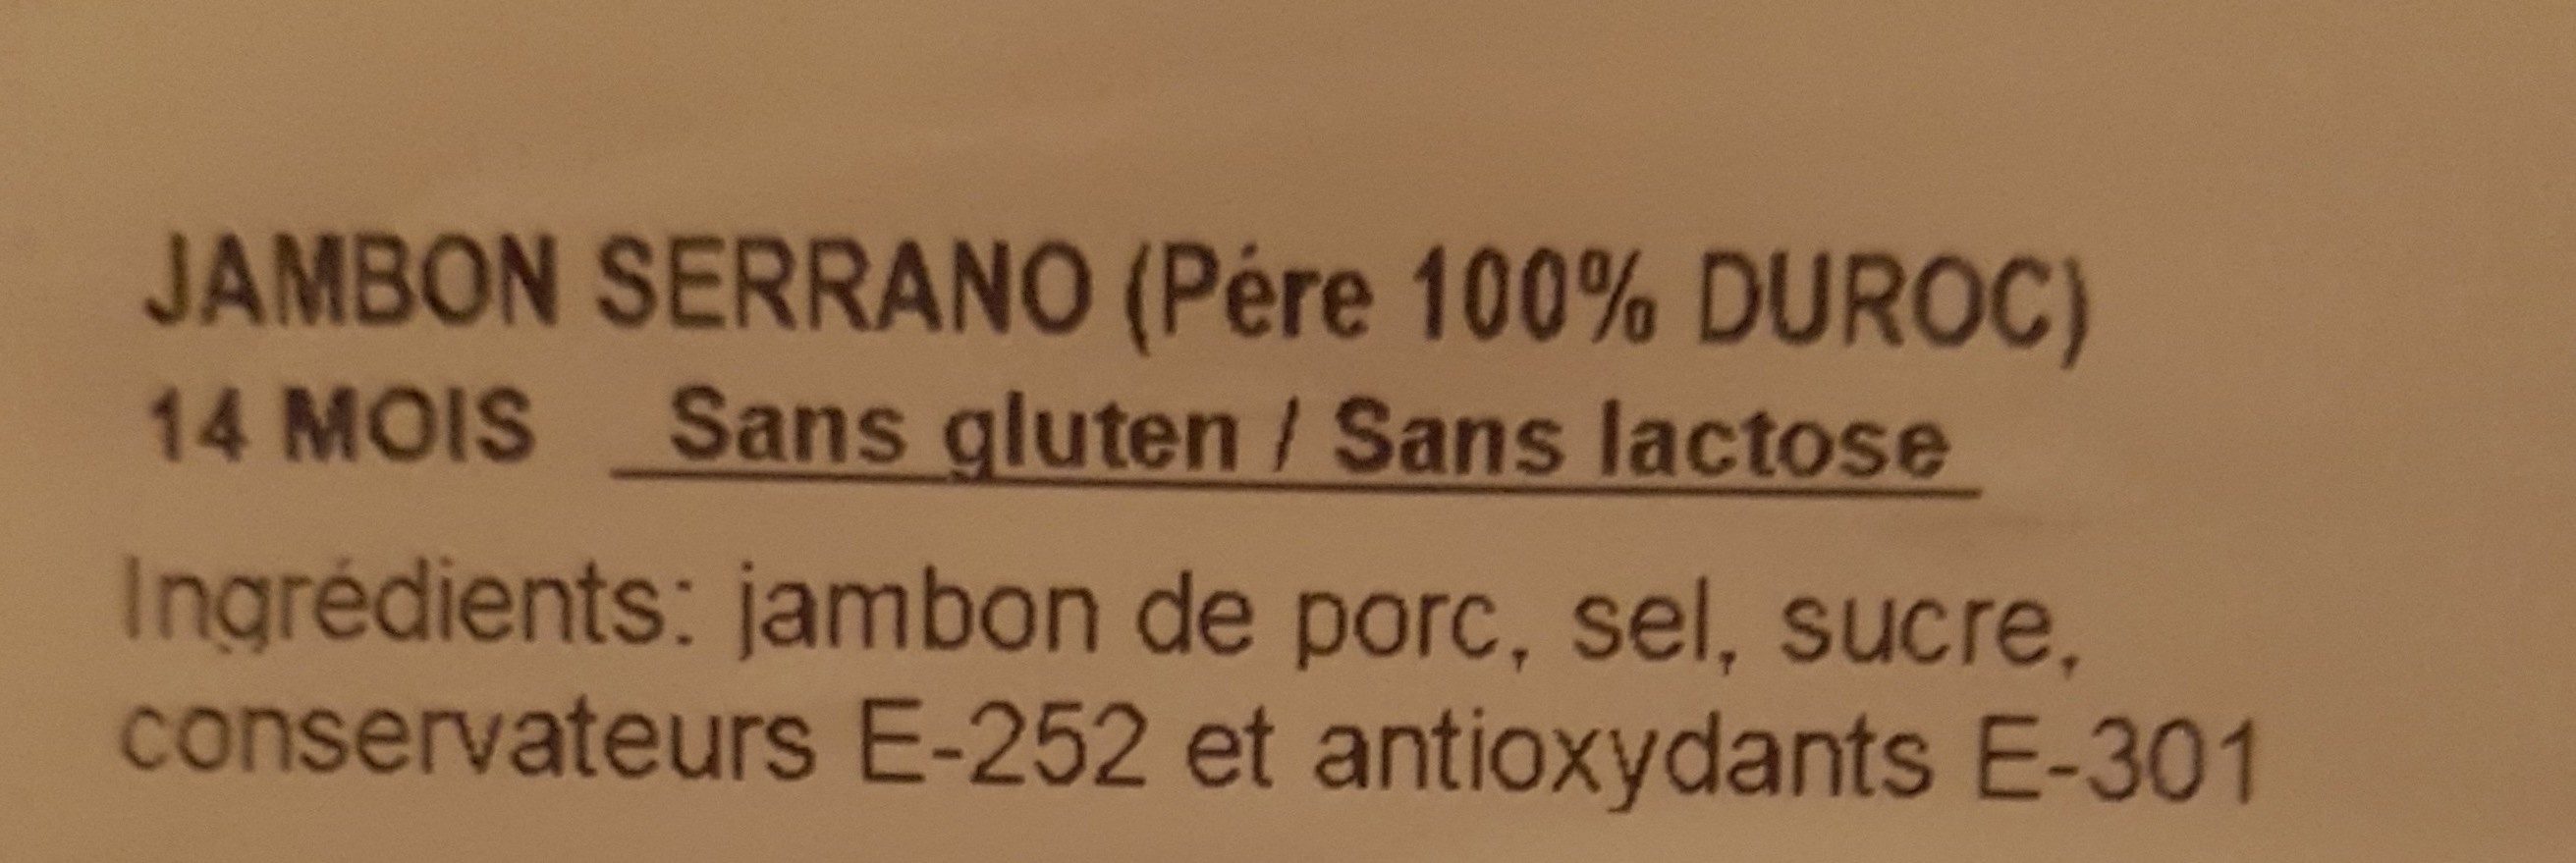 Jambon serrant (père 100% Duroc) - Ingredients - fr